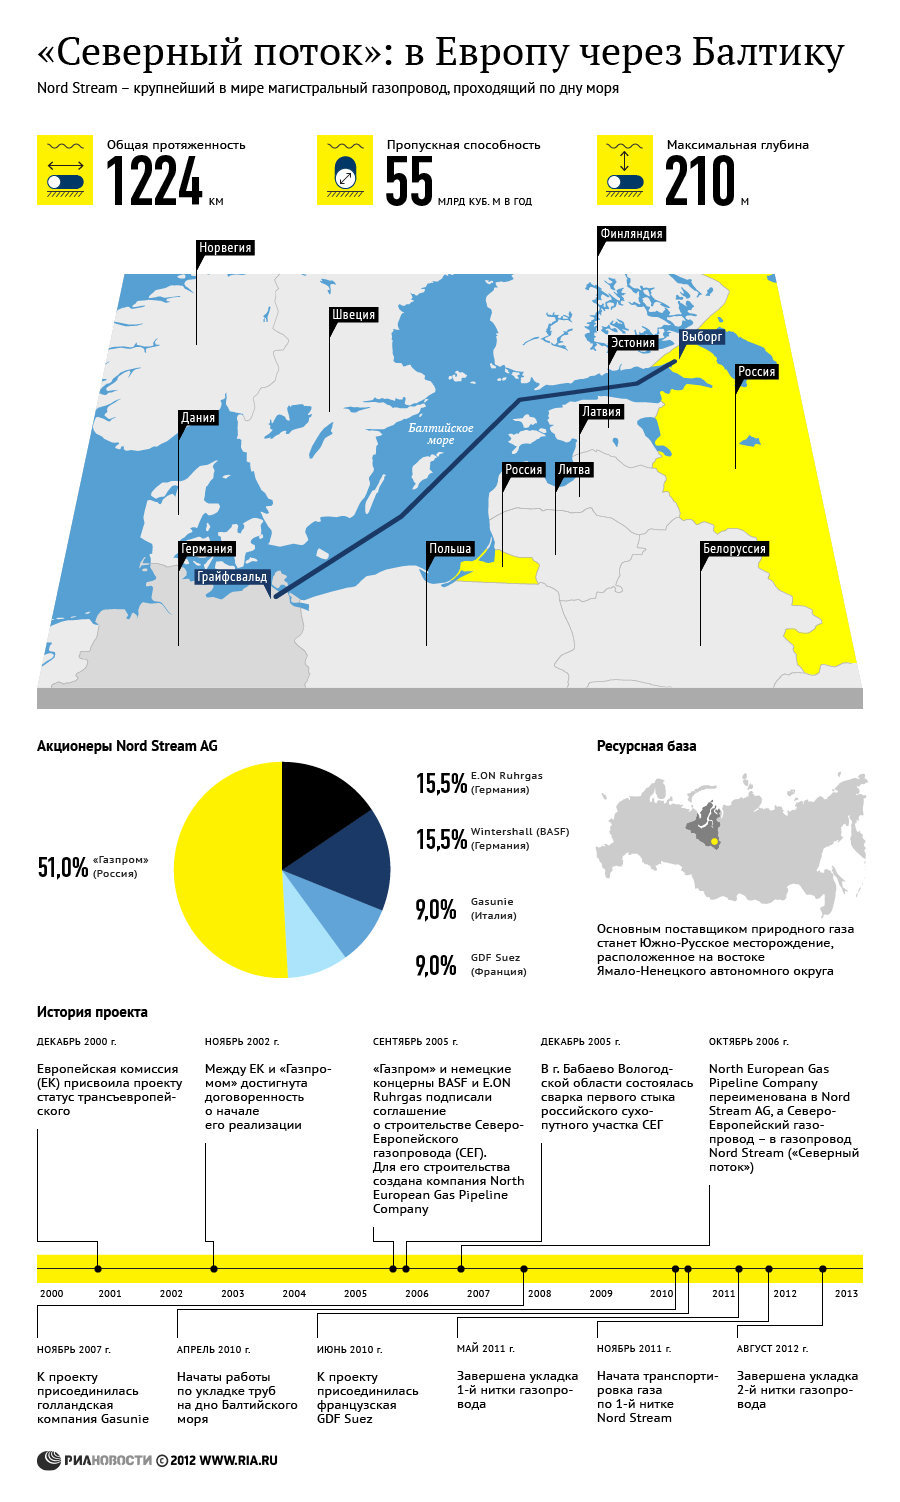 Северный поток : в Европу через Балтику